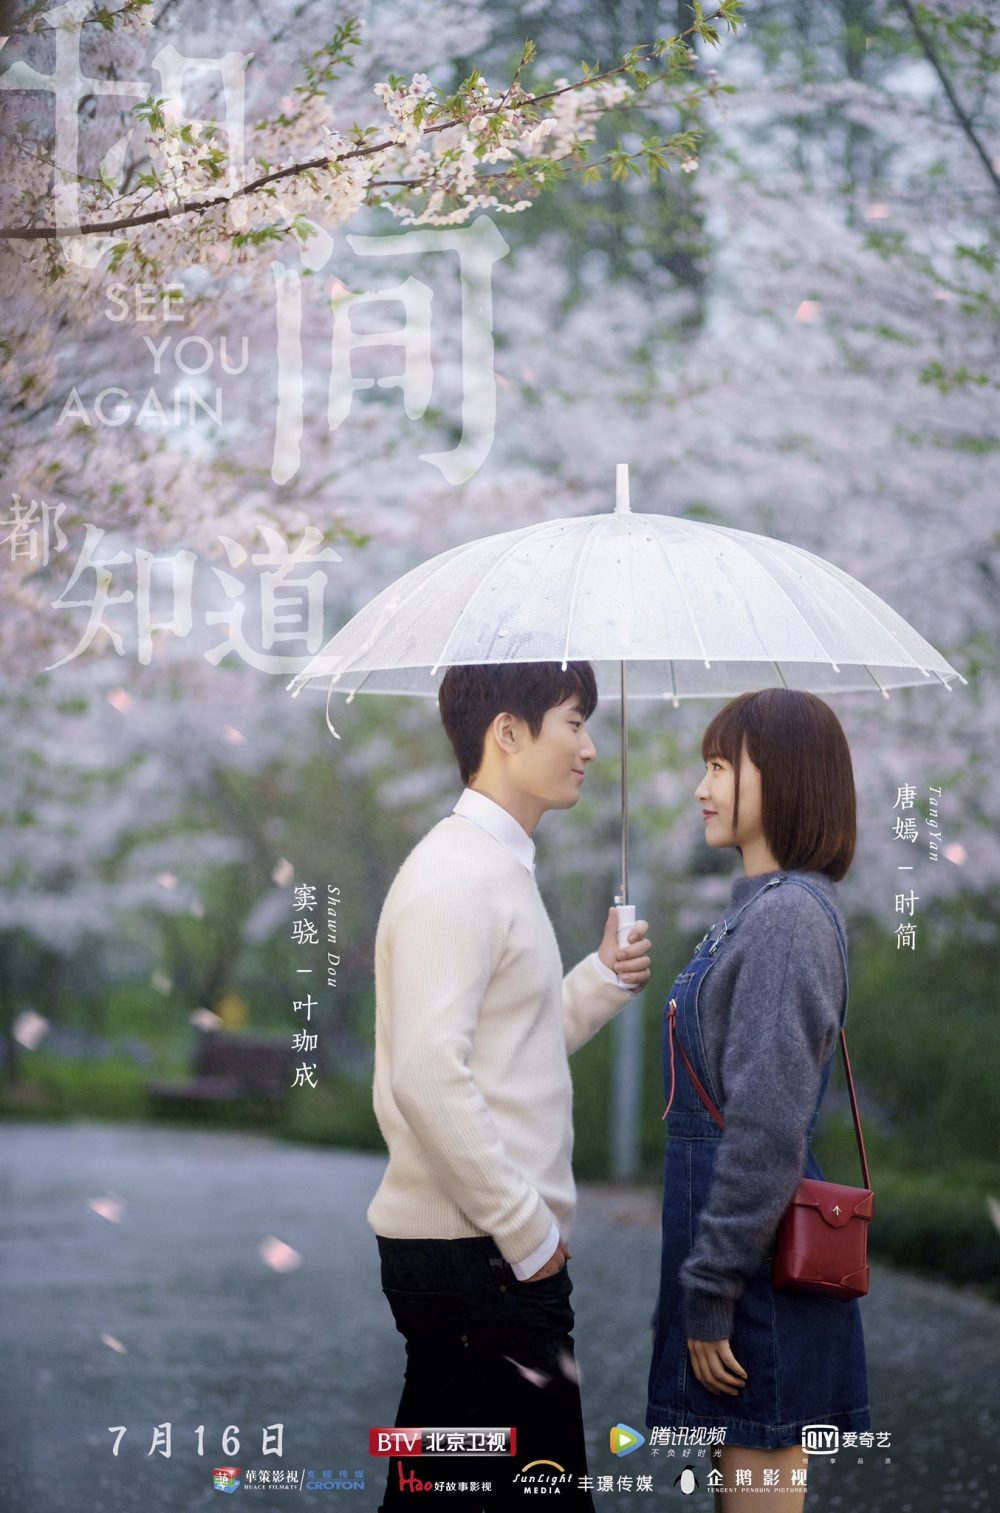 Phim xuyên ko Trung Quốc hay: Thời gian trá đều biết rõ - See You Again (2019)